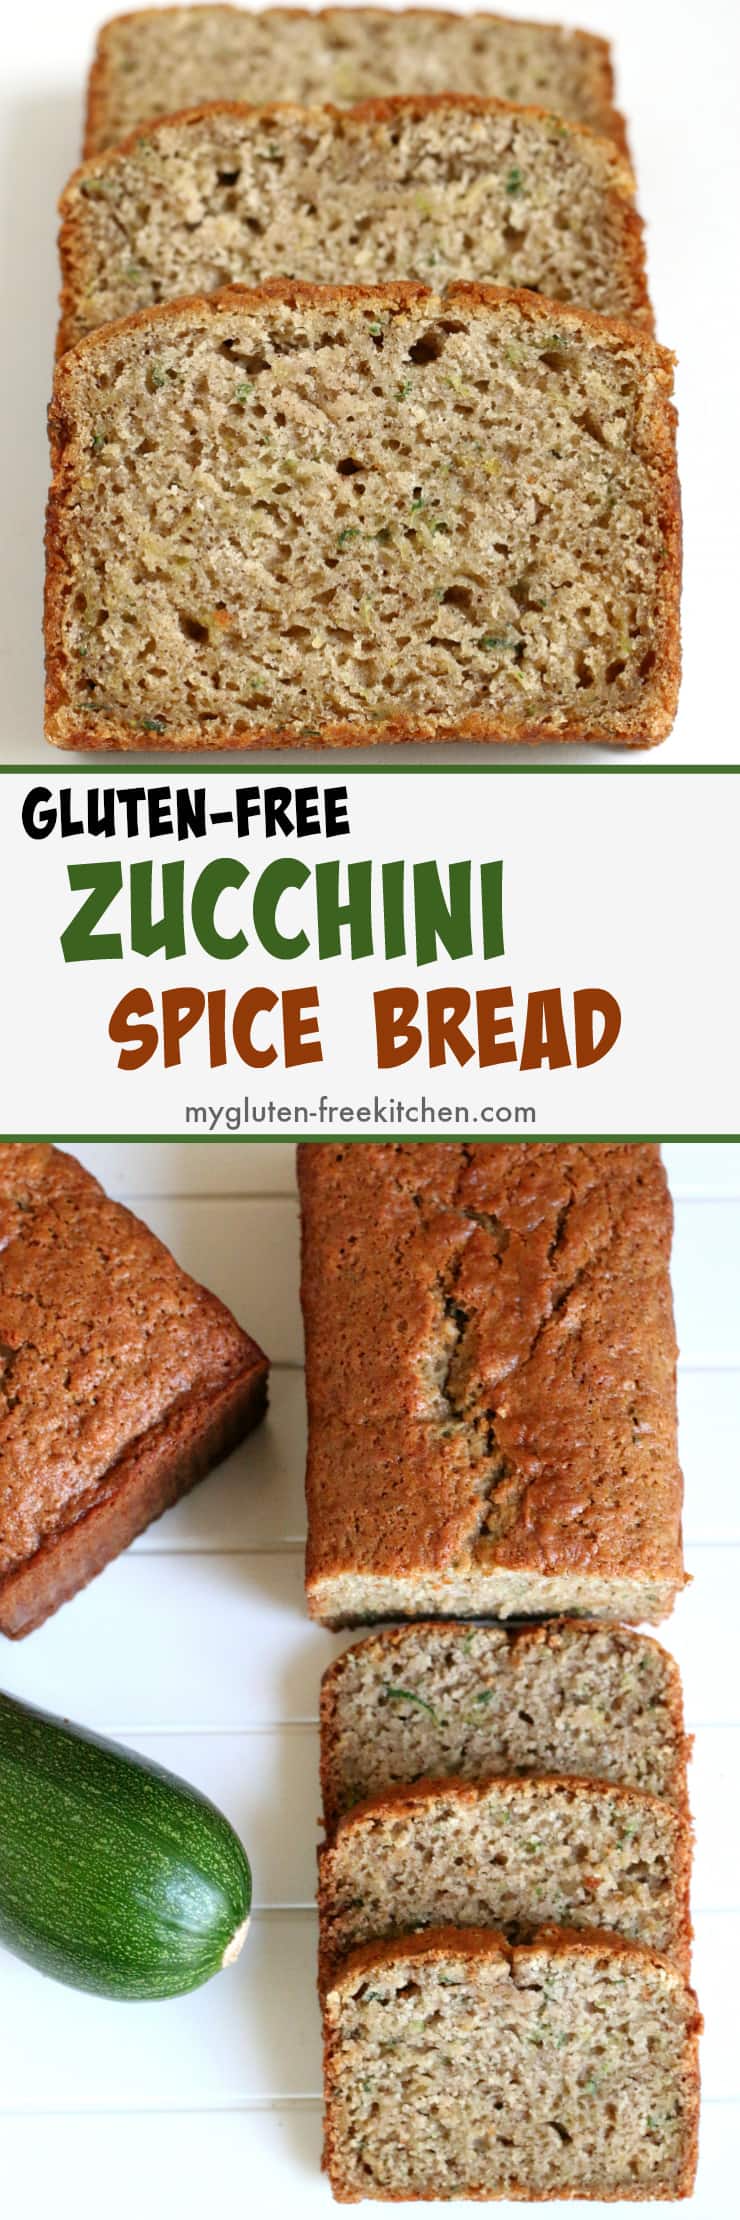 Gluten-free Zucchini Spice Bread